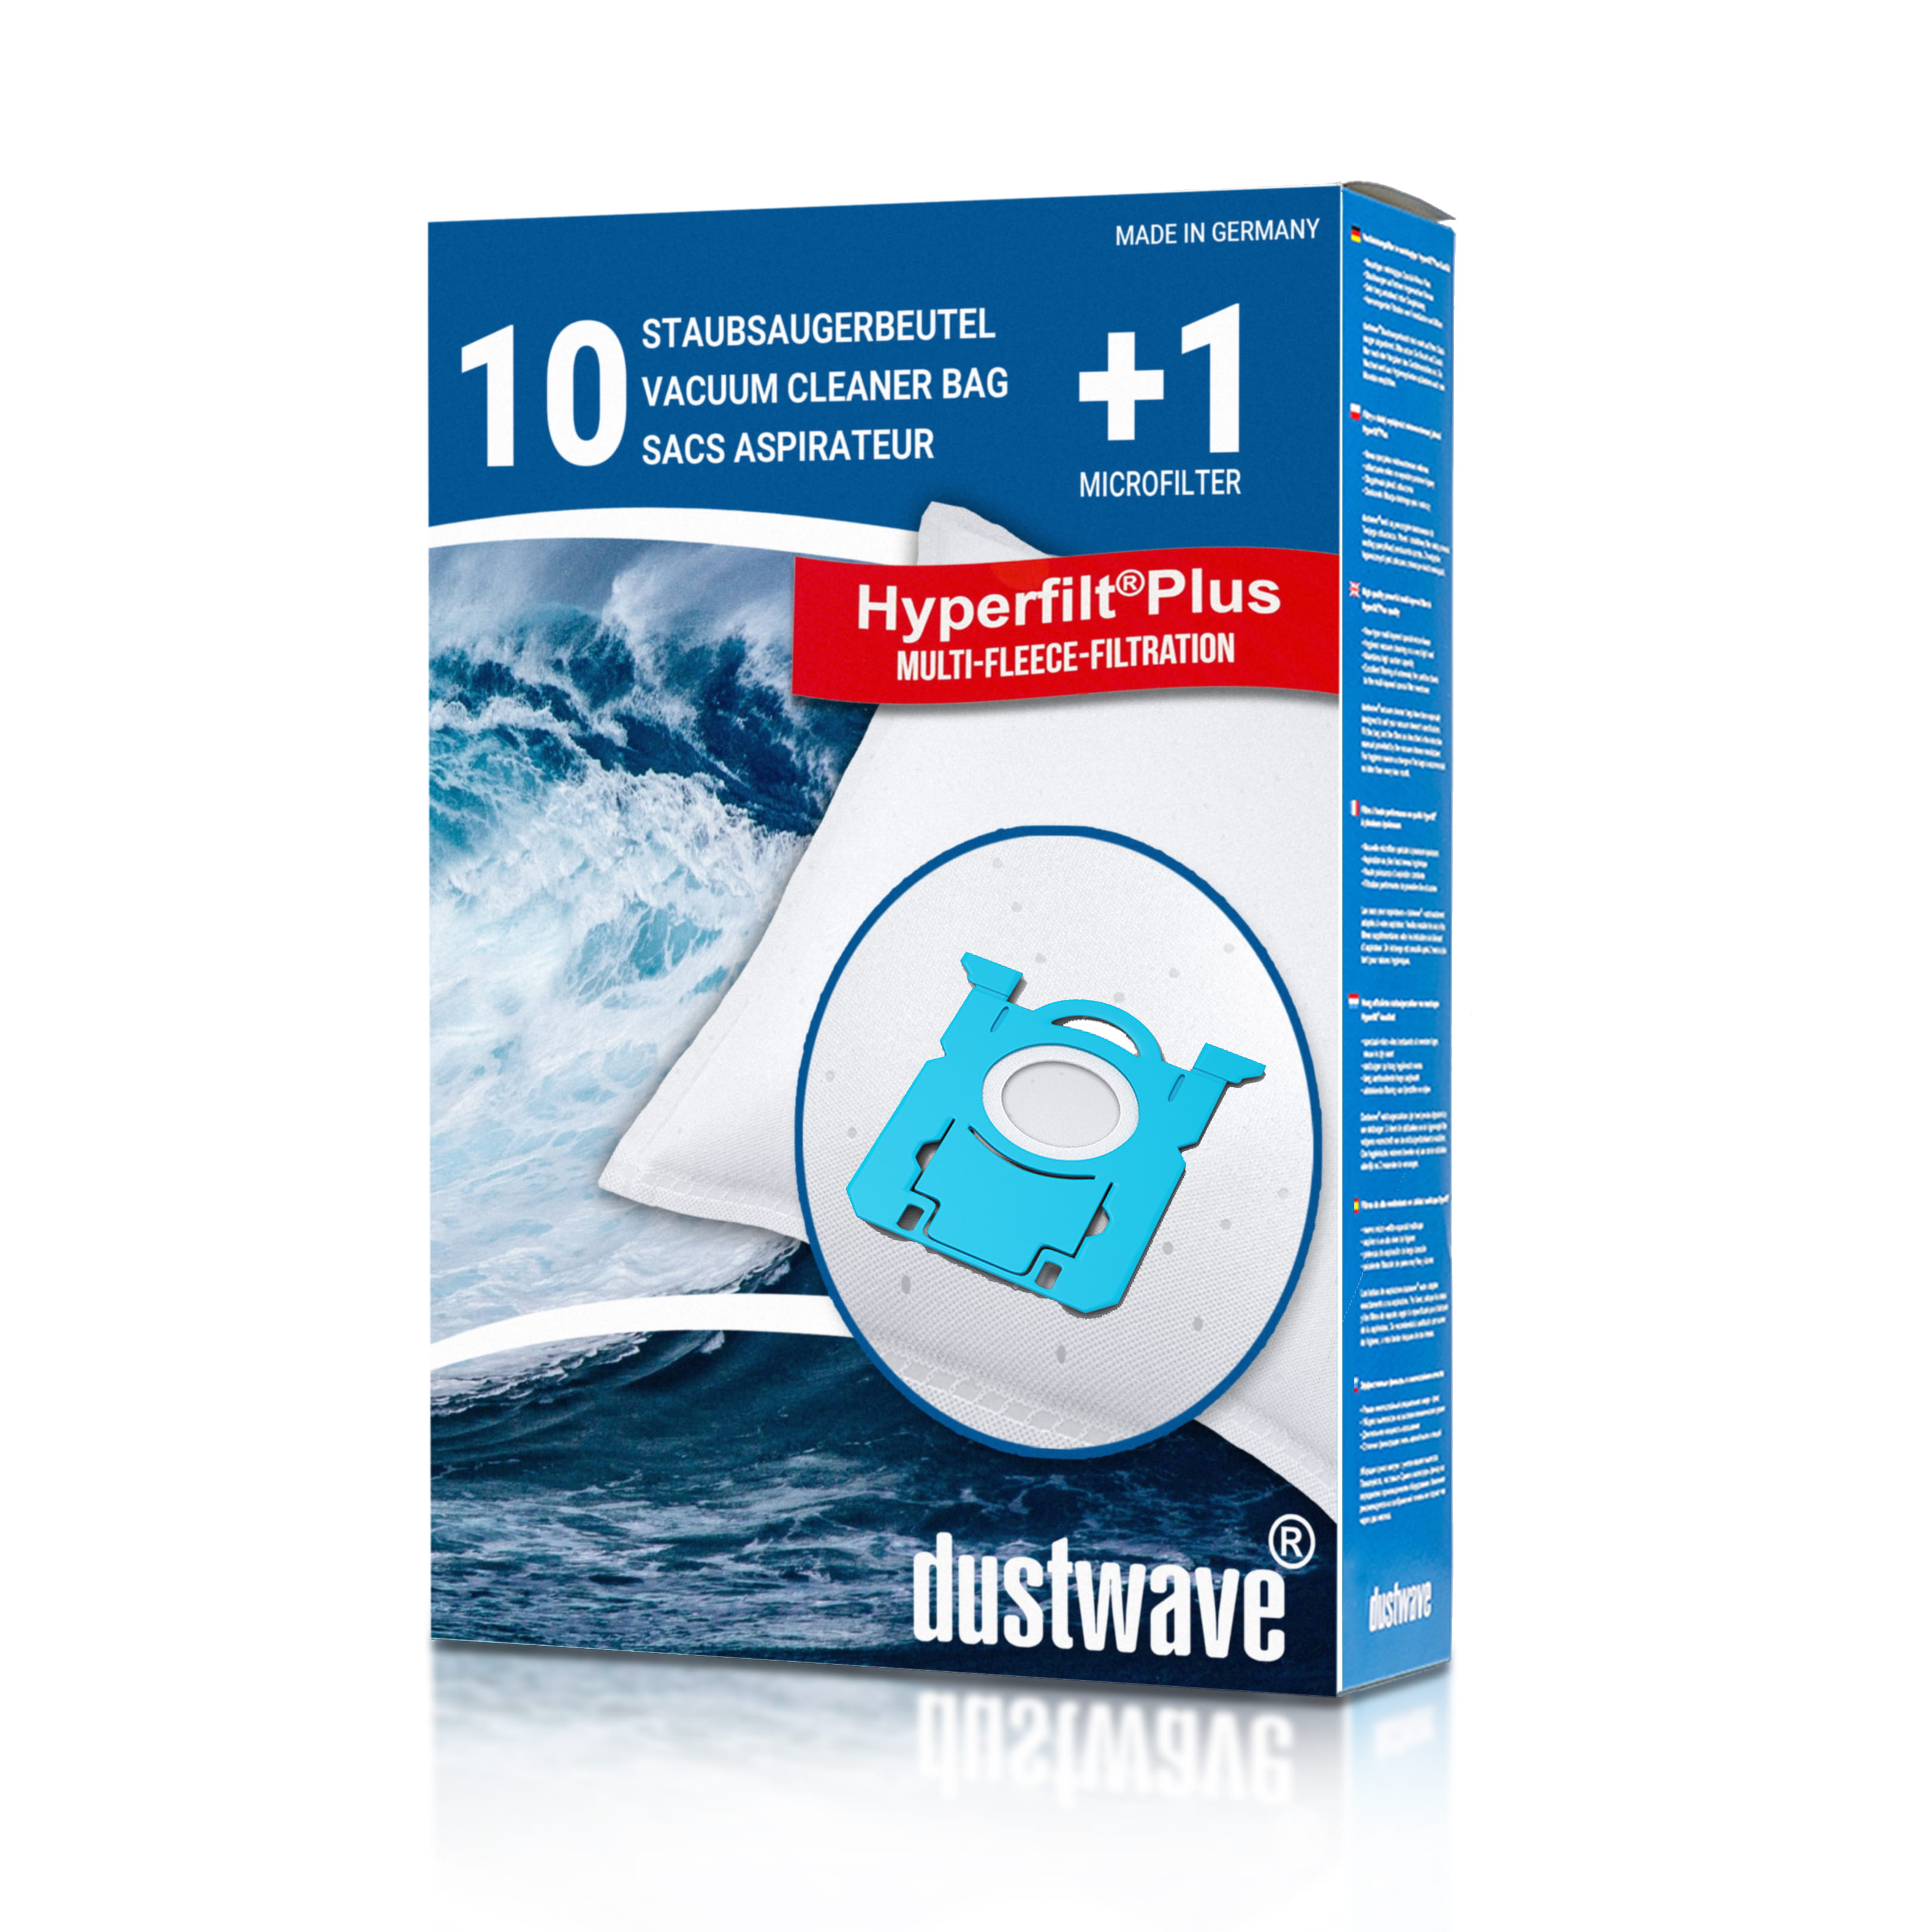 Dustwave® 10 Staubsaugerbeutel für AEG GR205 / Größe 205 - hocheffizient mit Hygieneverschluss - Made in Germany